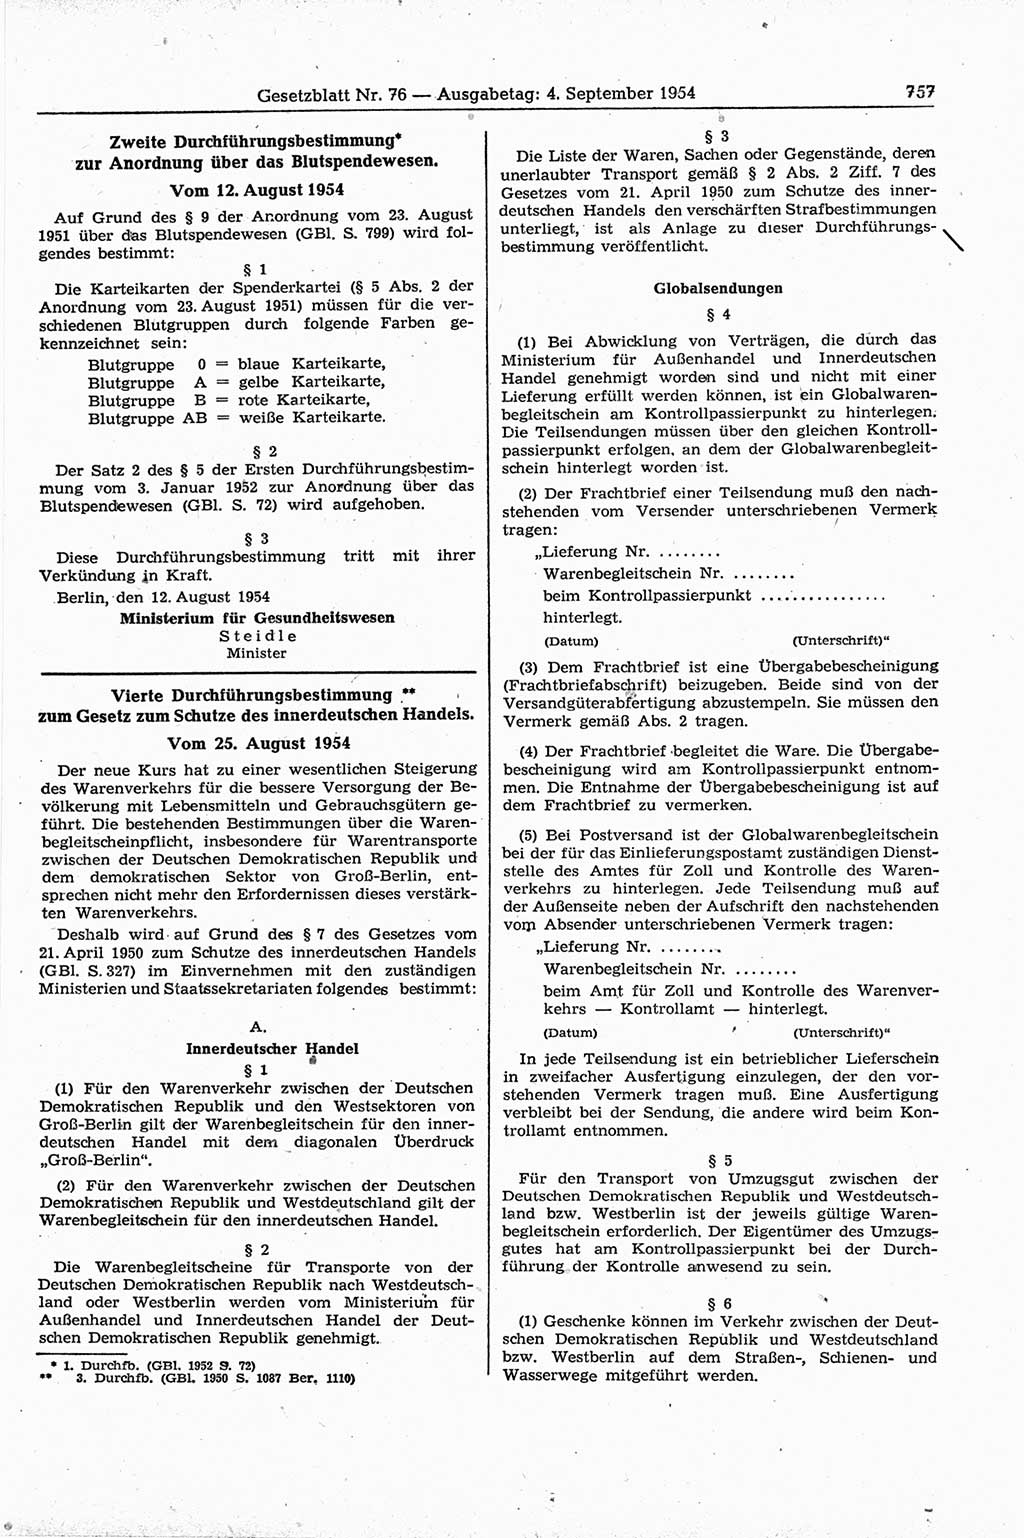 Gesetzblatt (GBl.) der Deutschen Demokratischen Republik (DDR) 1954, Seite 757 (GBl. DDR 1954, S. 757)